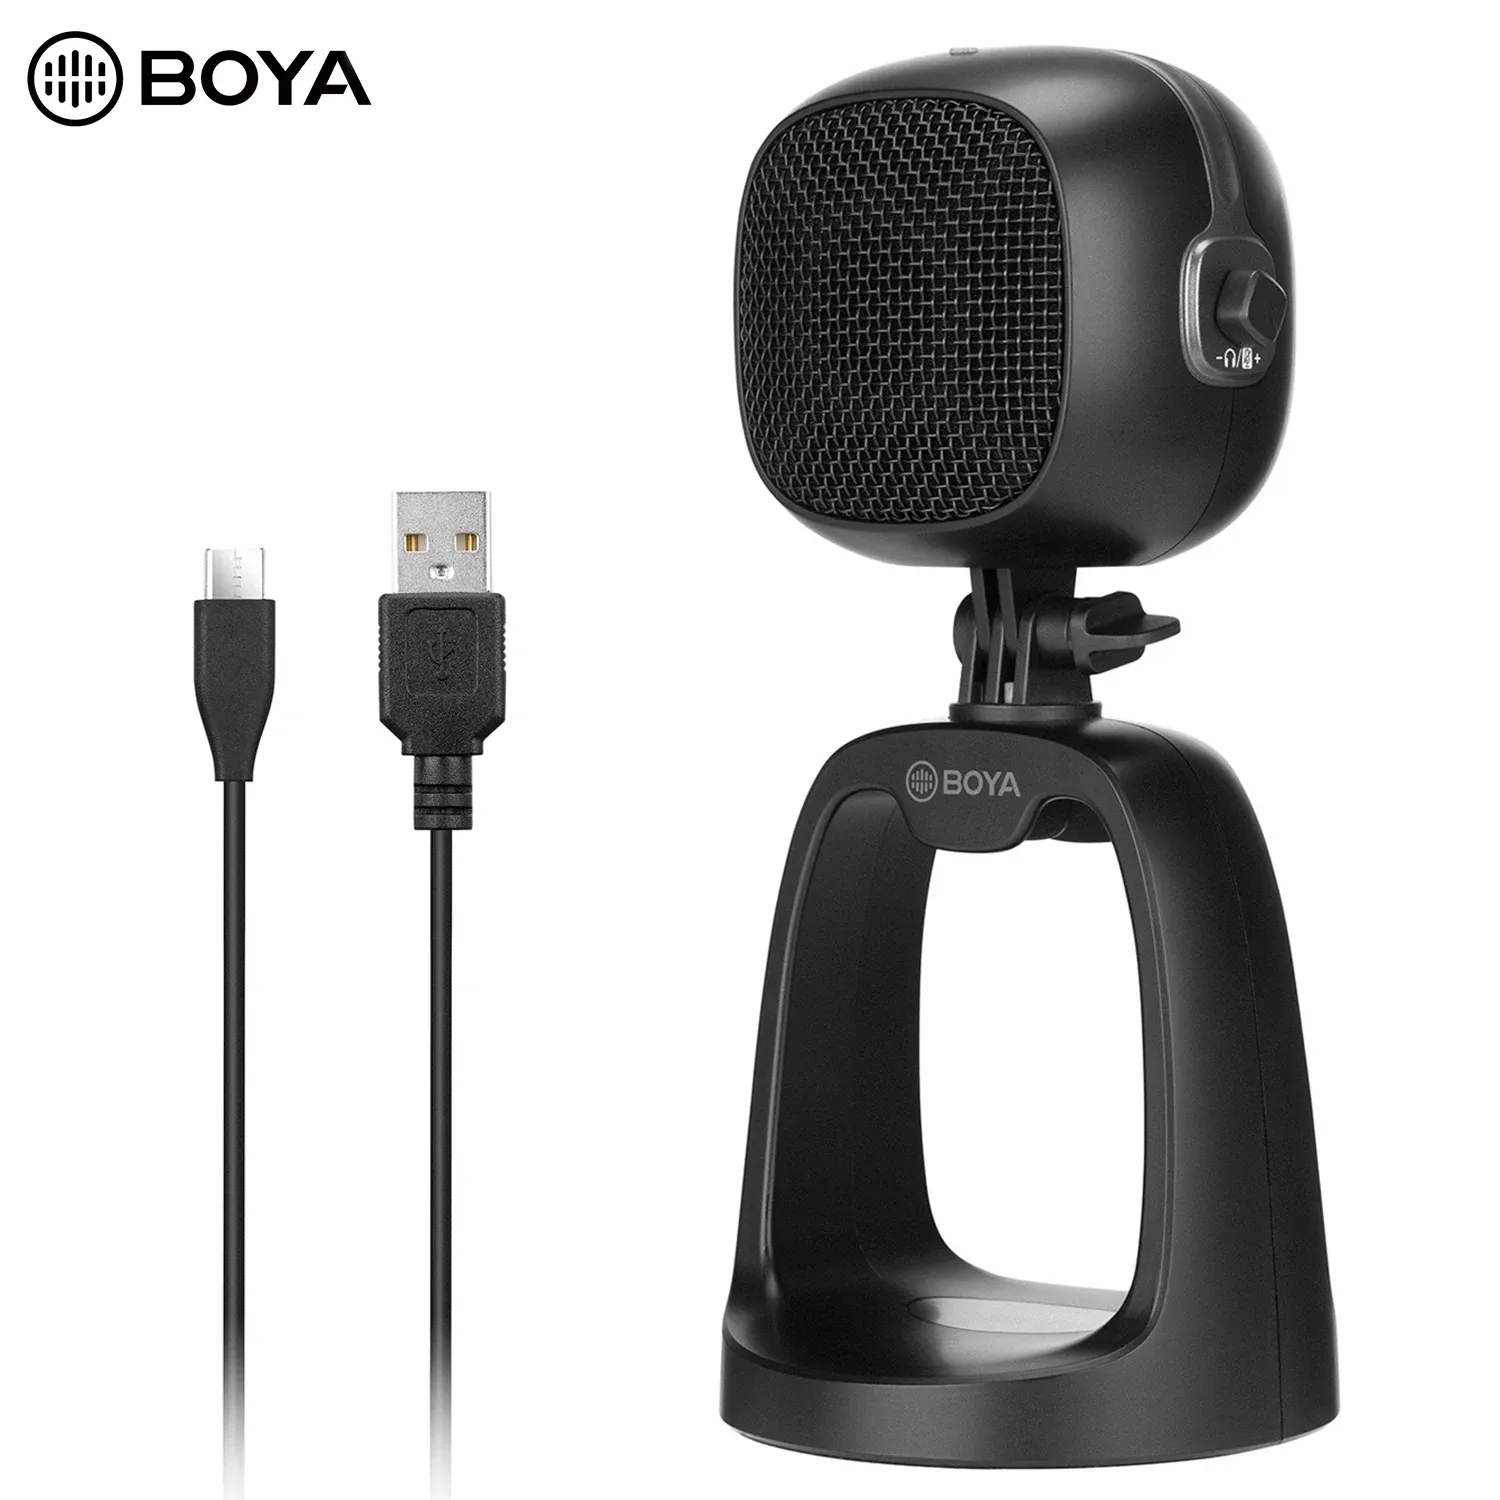 Microphones BOYA BYCM6 condensateur professionnel micro USB de bureau micro pour ordinateur portable enregistrement YouTube Mobile Podcast Studio blogueur